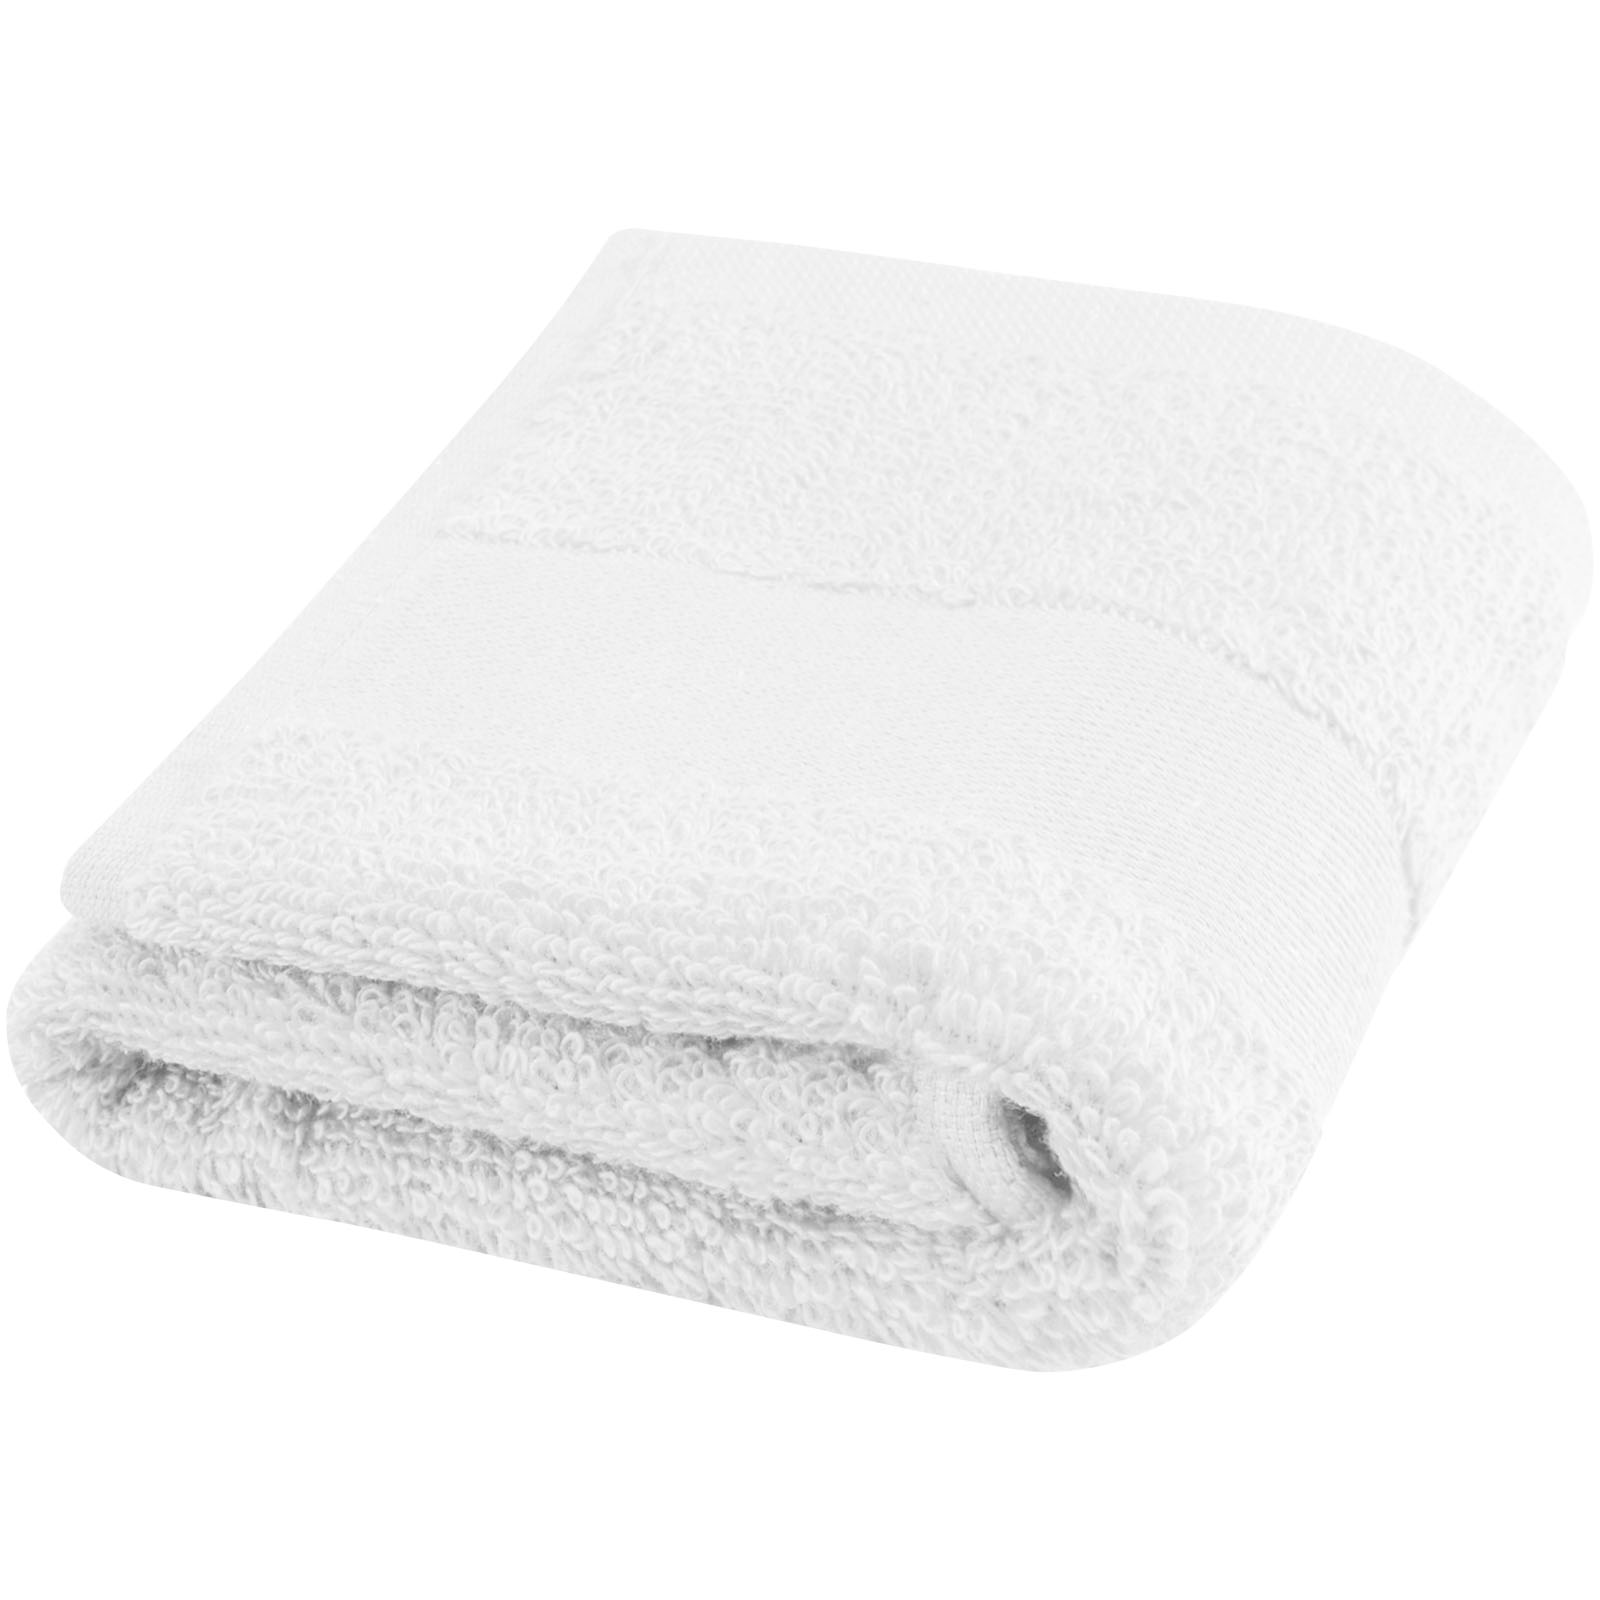 Asciugamano Eco di Lusso - Torri di Quartesolo